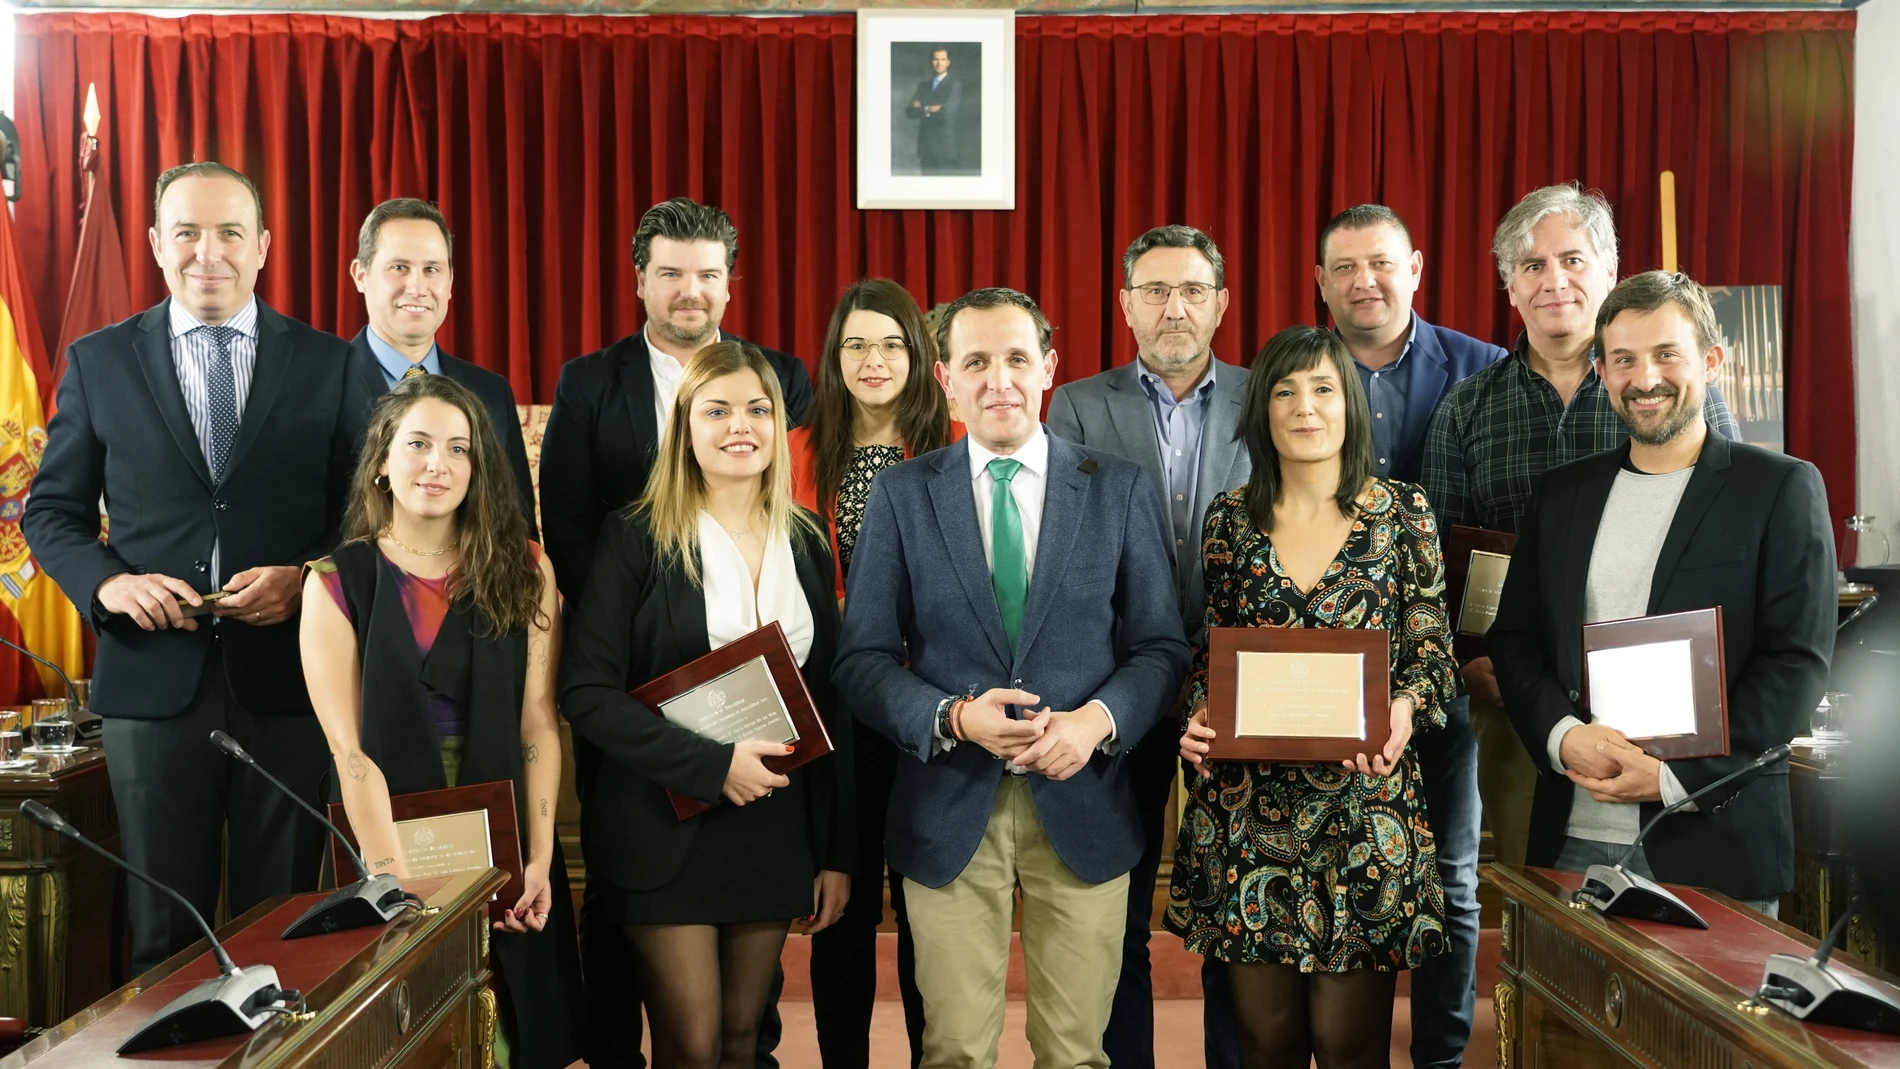 Entrega de los Premios Luis Laforga de la Diputación de Valladolid